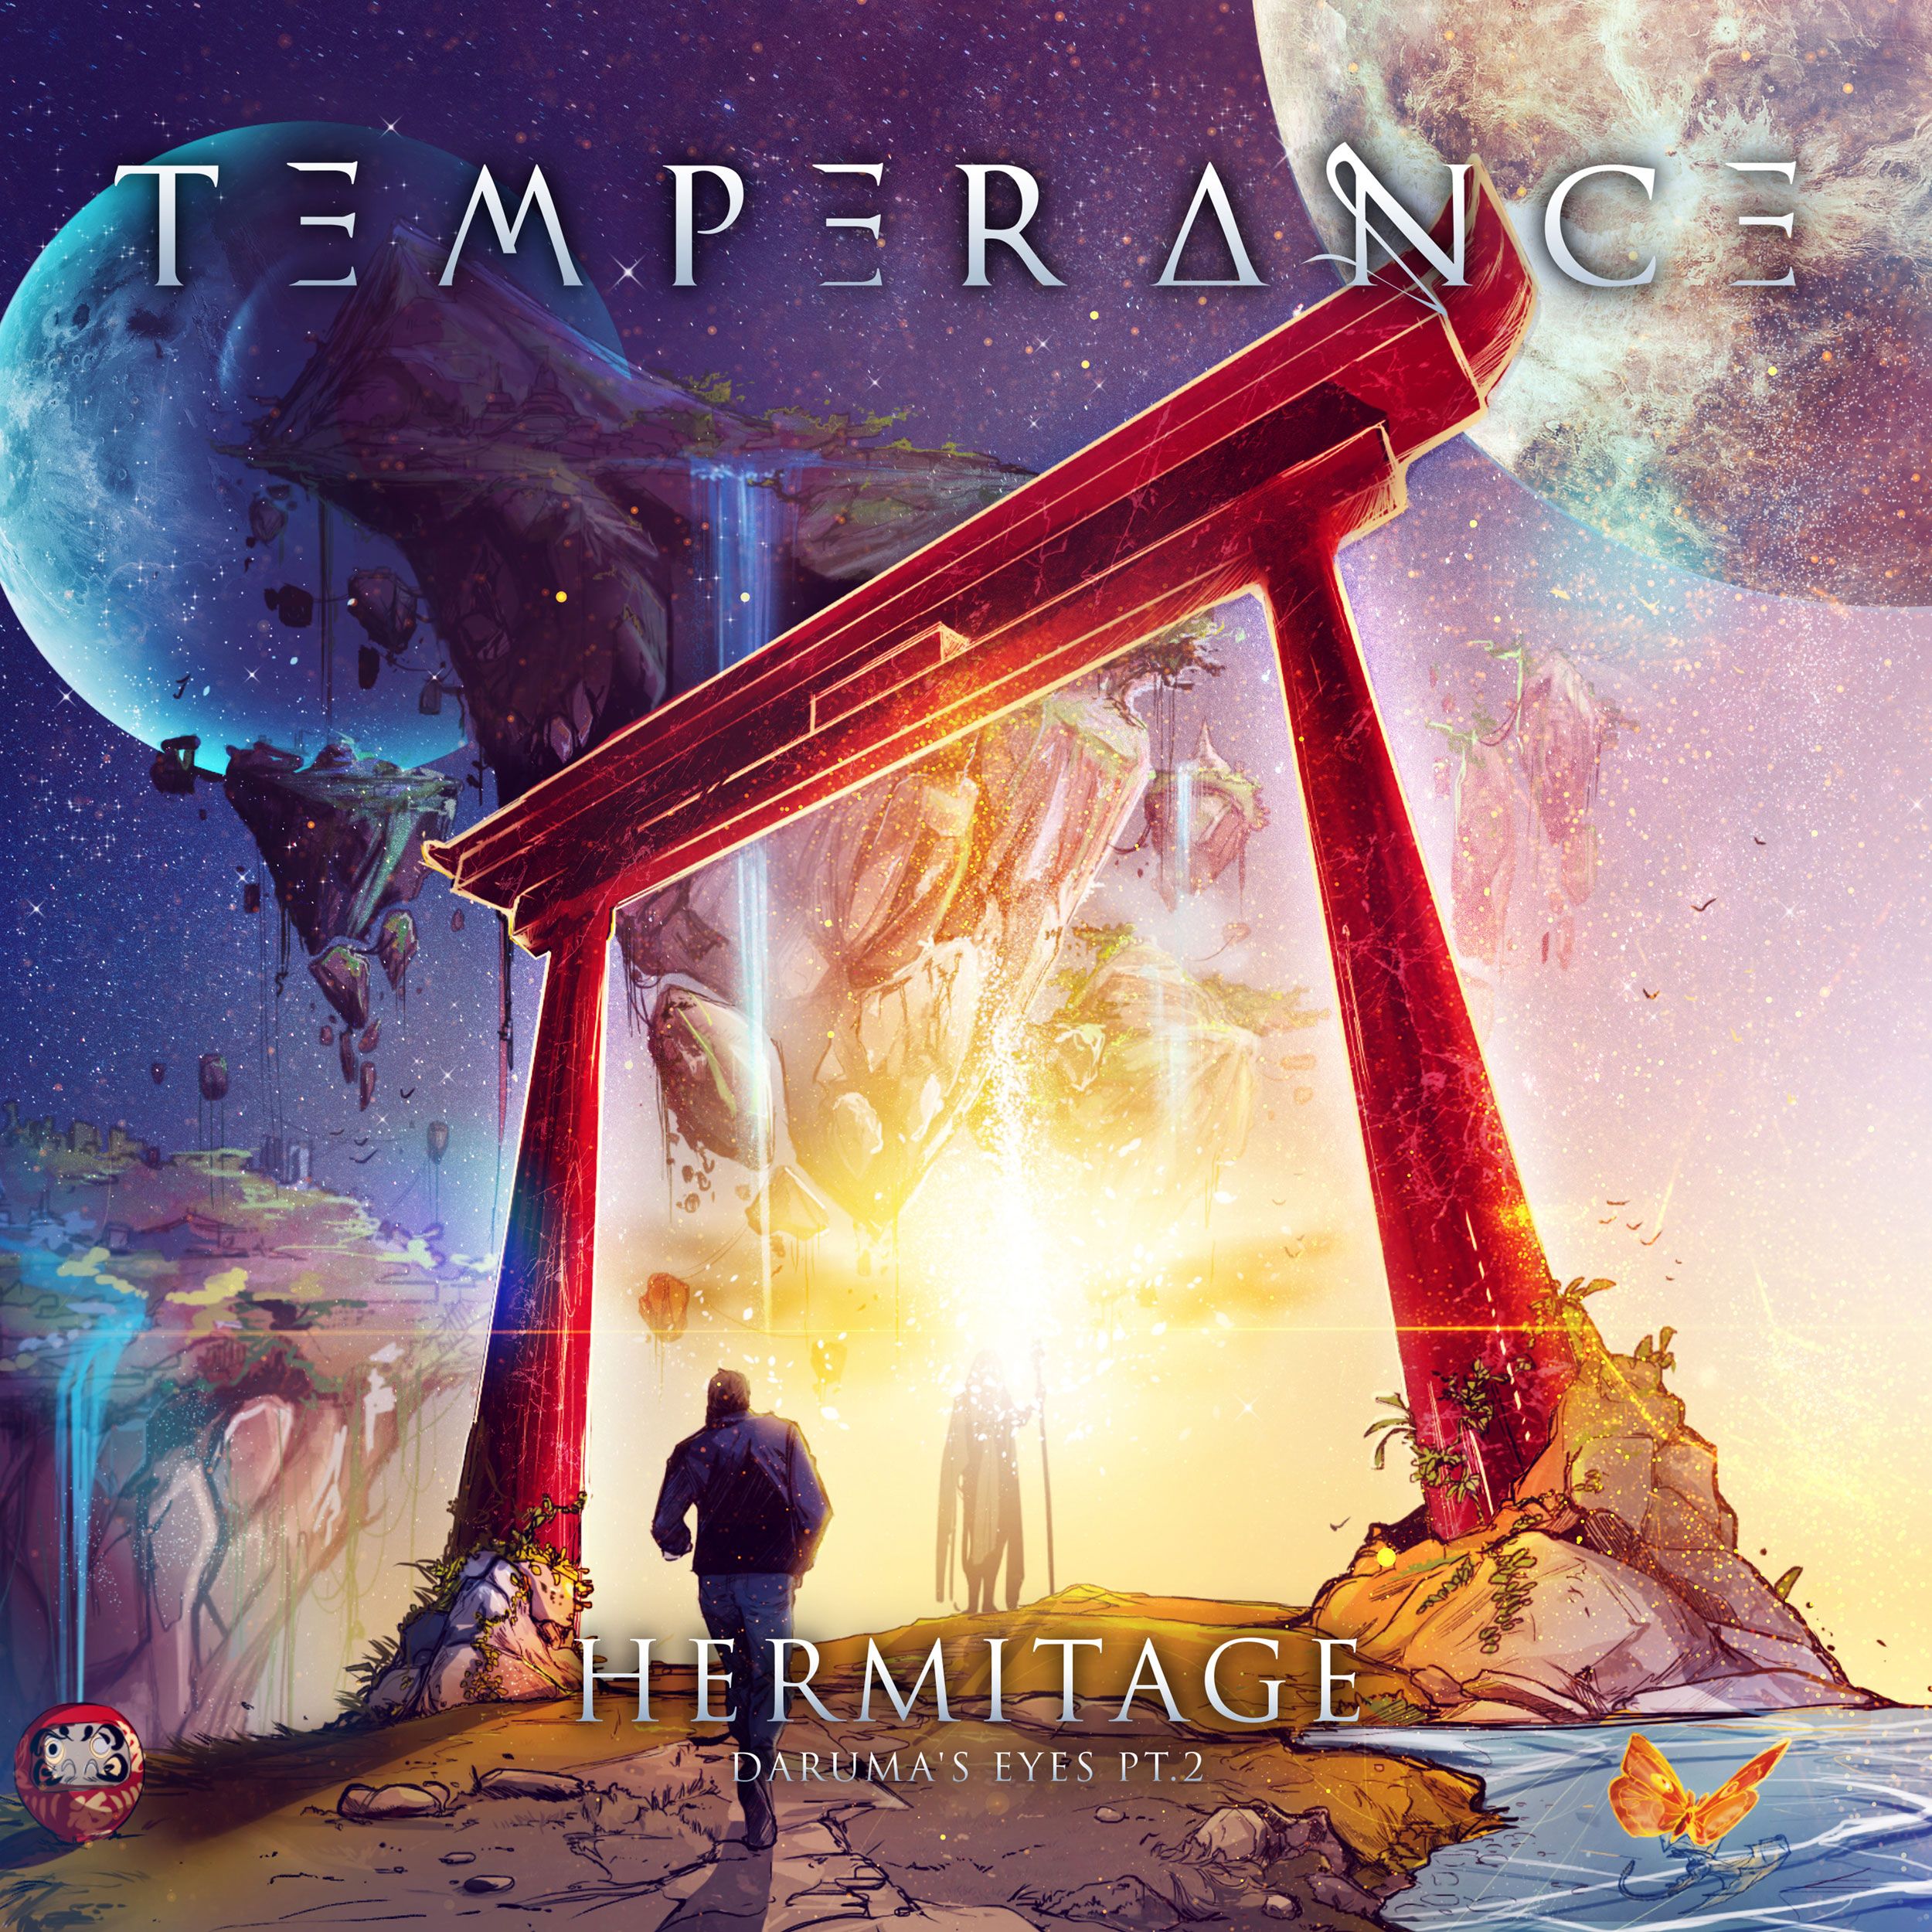 Album cover "Diamanti" - Temperance